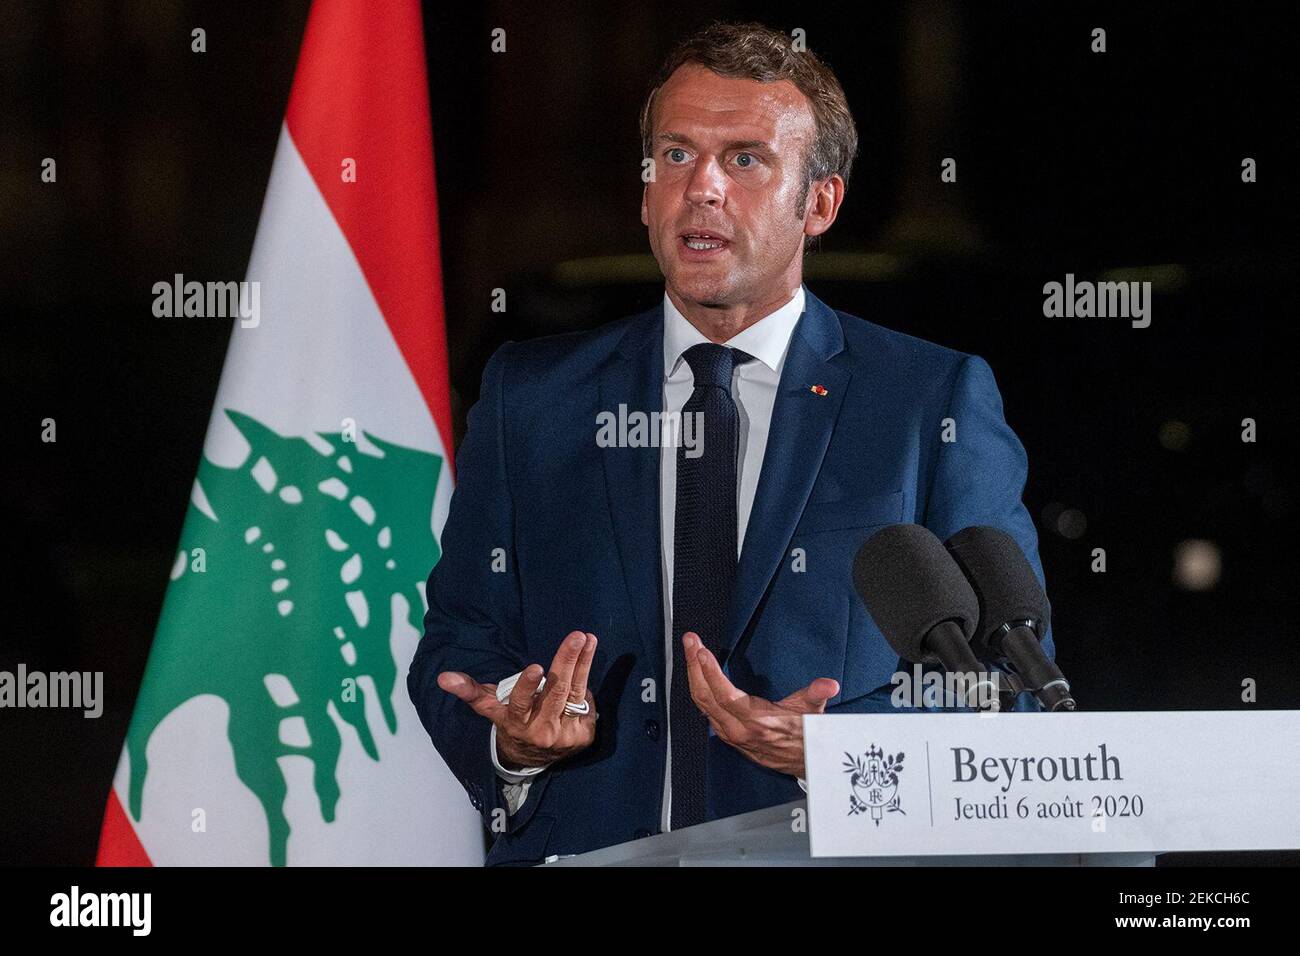 El presidente francés Emmanuel Macron habla durante una conferencia de prensa en el jardín de la Residencia des Pins, la casa del embajador francés, en Beirut, Líbano, el 6 de agosto de 2020. (Foto de Ammar Abd Rabbo/ABACAPRESS.COM/TNS) Foto de stock